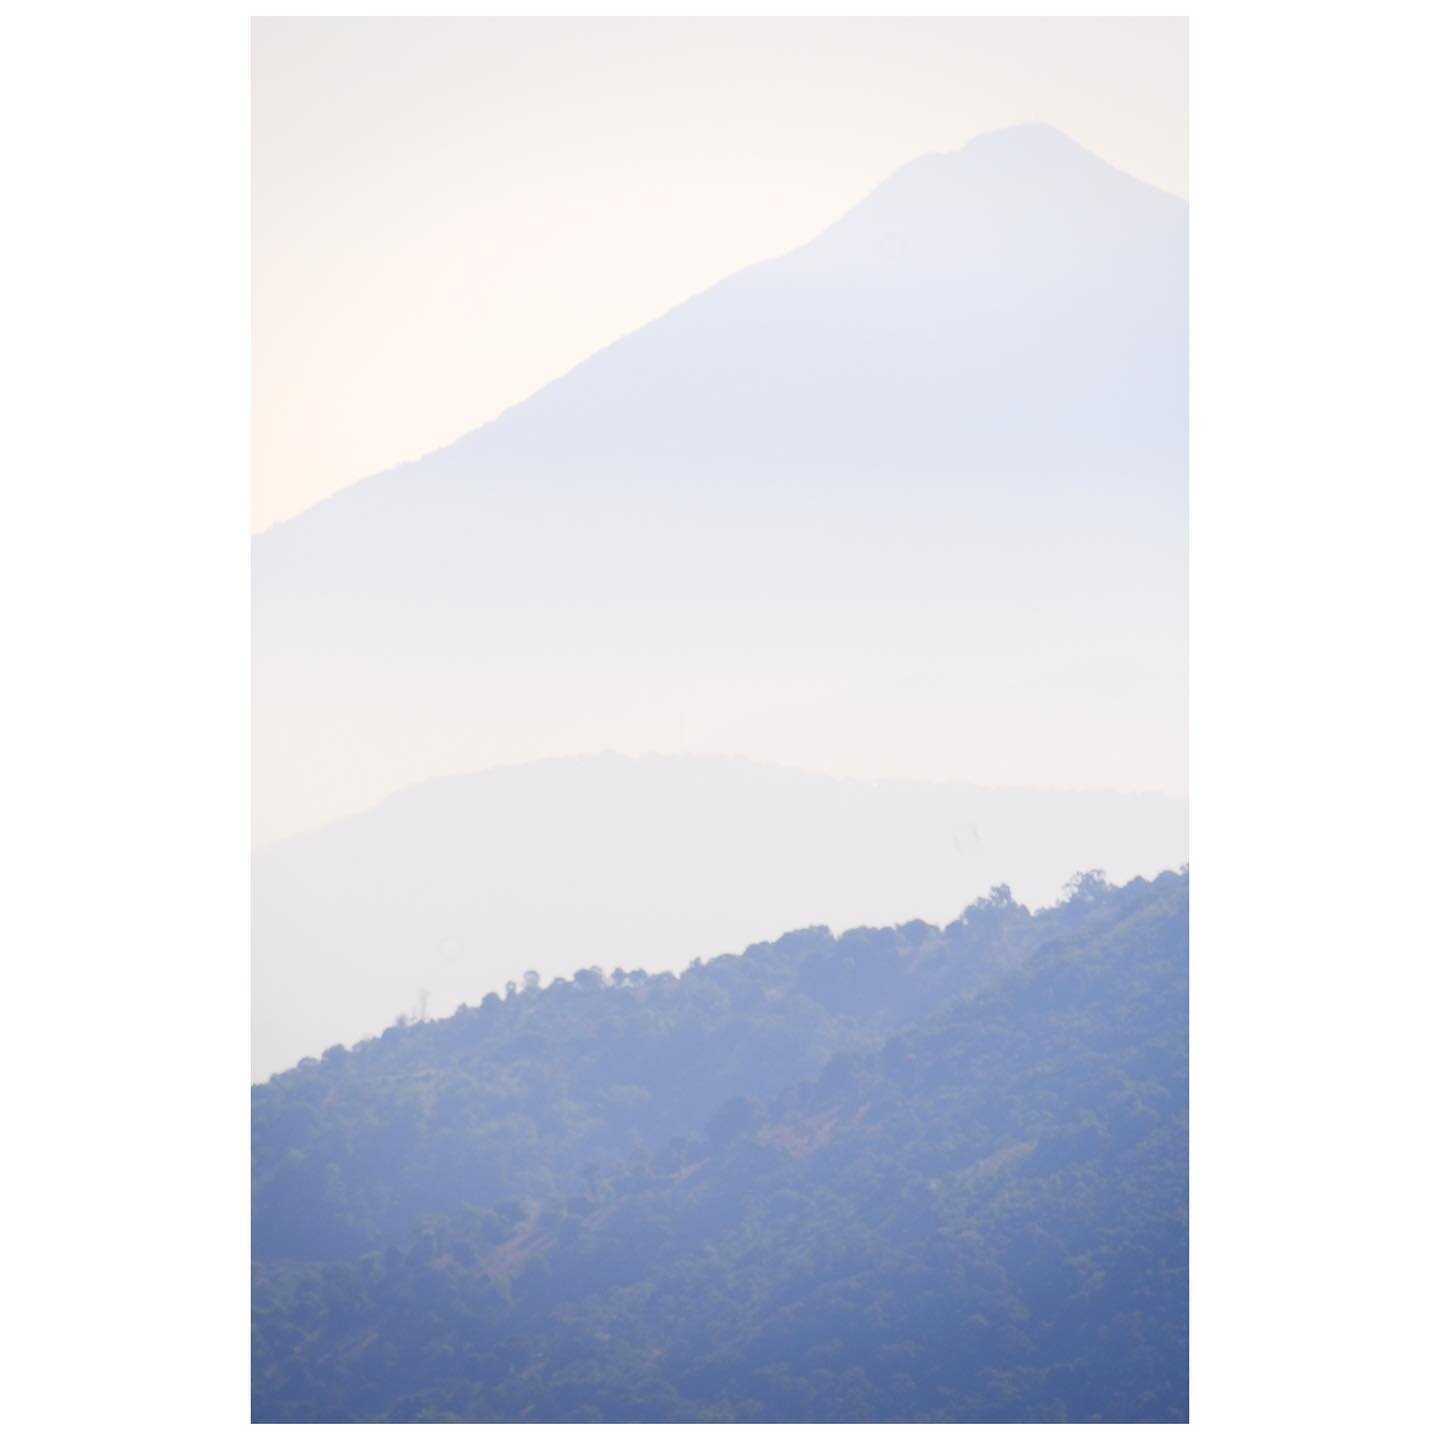 misty mountains
.
.
.
.
#mountain #naturephotography #nature #naturelovers #zoom #Fuji #FujiXT4 #XT4 #photography #dailychallenge #digitalphotography #affinityphoto